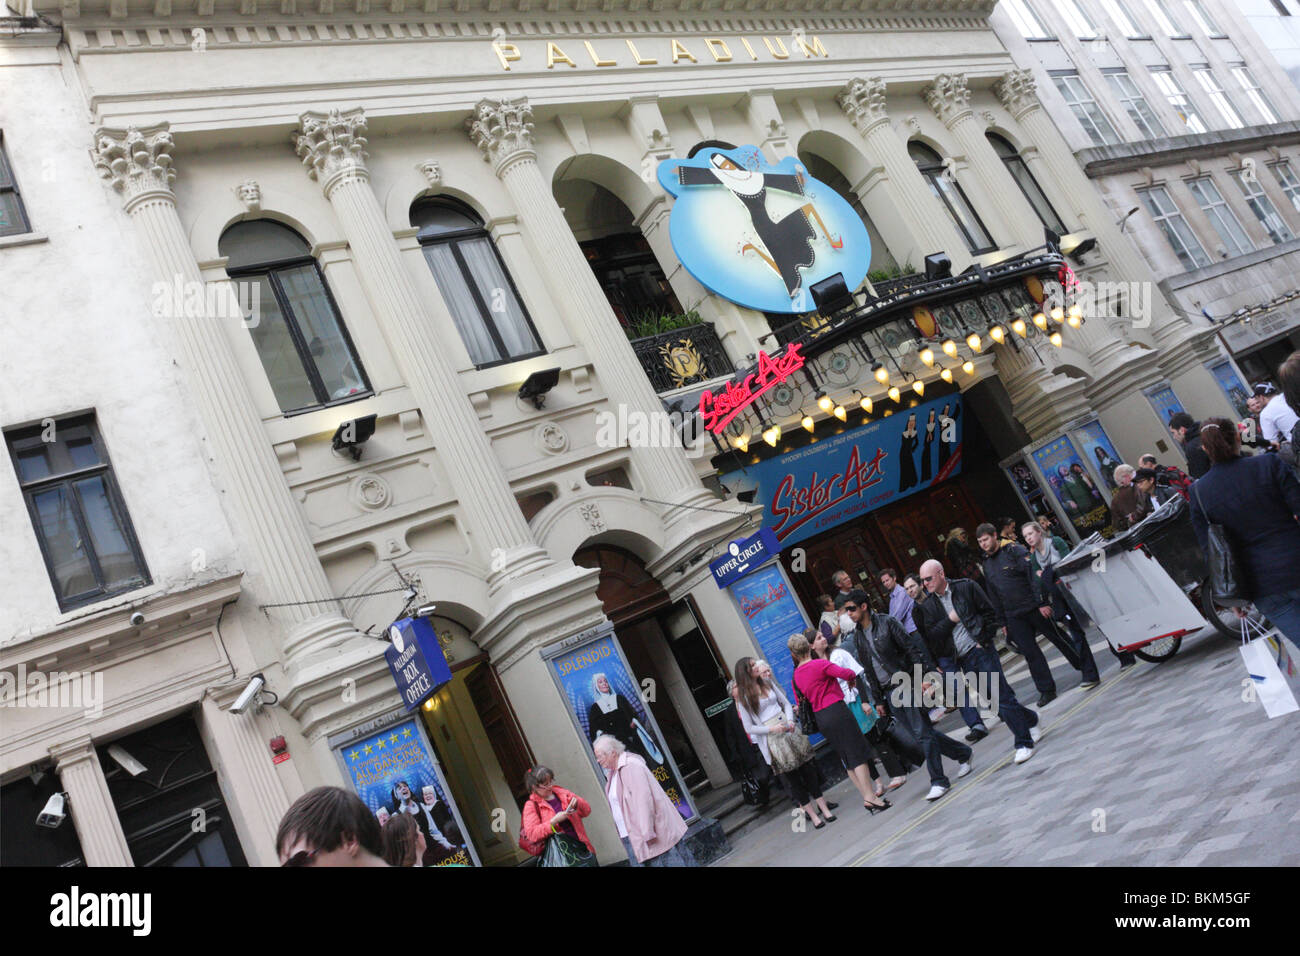 Frontansicht des weltweit bekannten London Palladium Theater in Argyll Street, London. Stockfoto